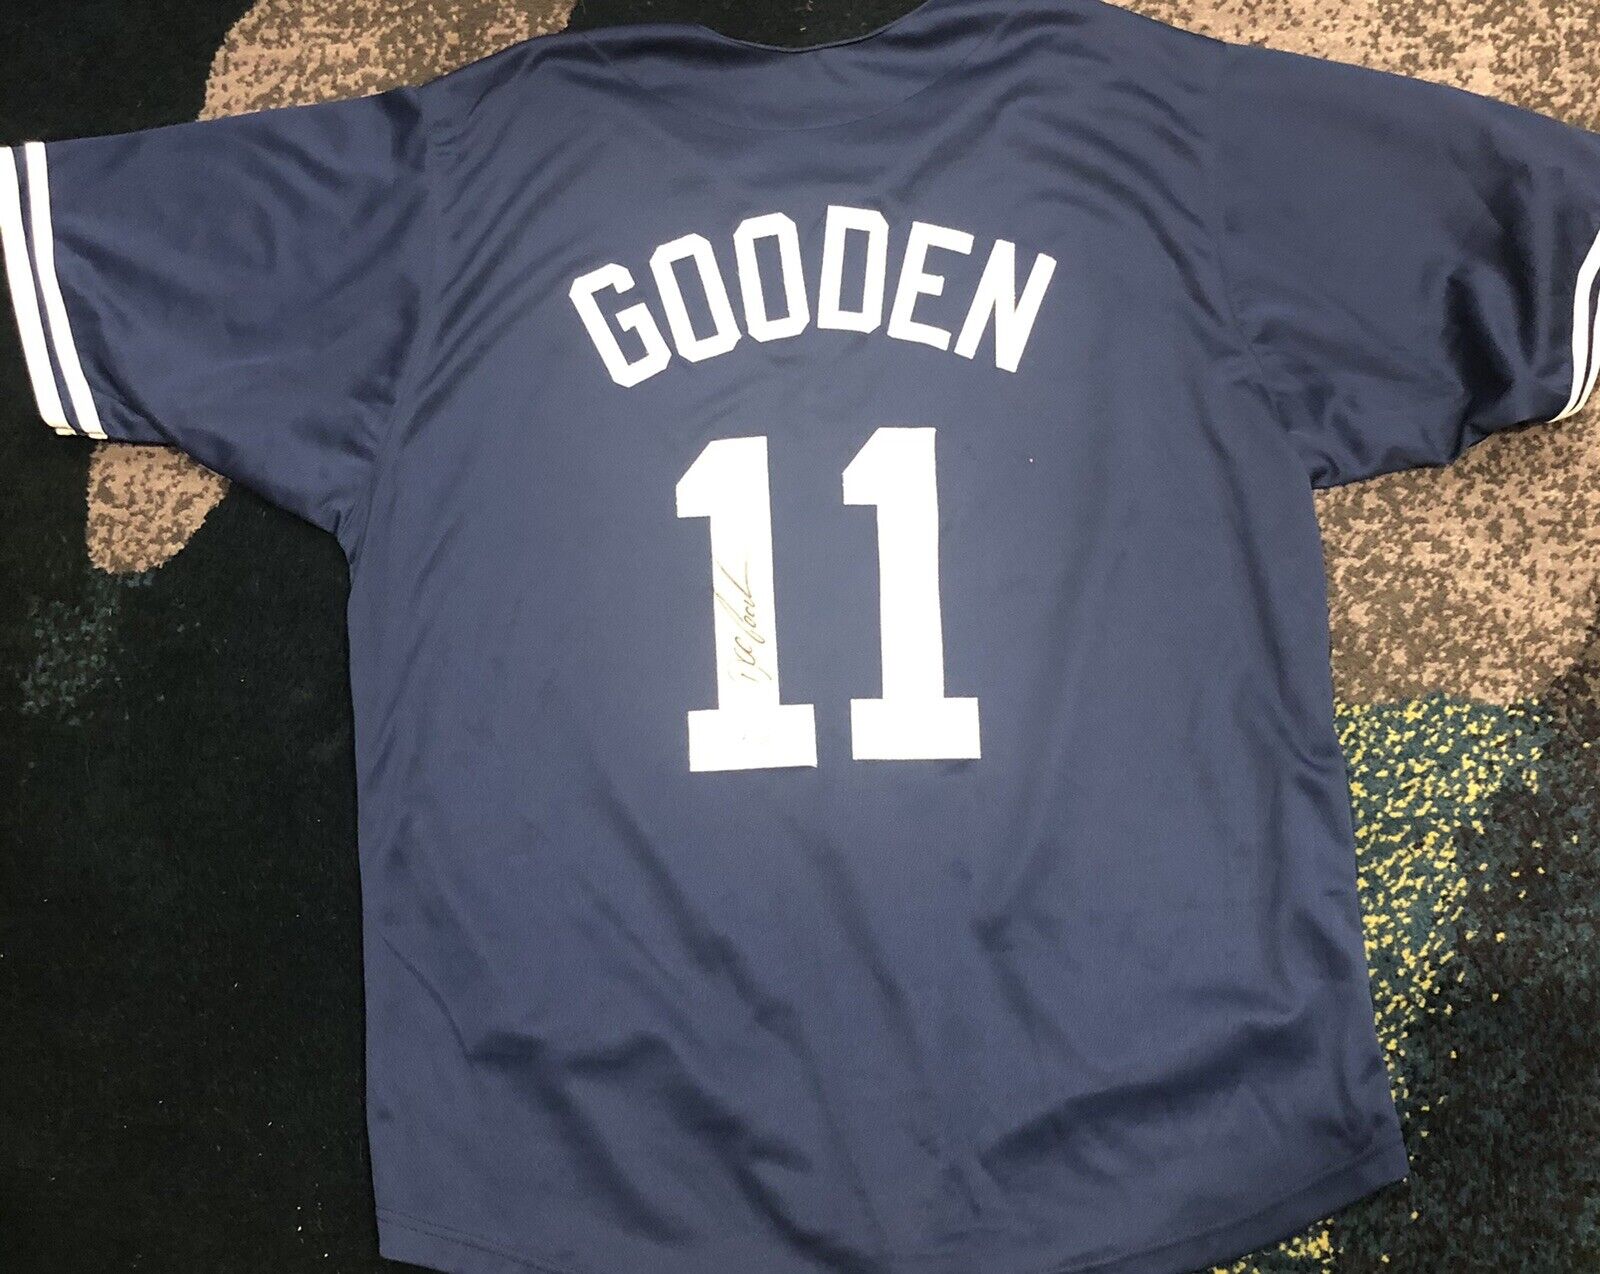 Dwight Doc Gooden New York Yankees Signed Baseball Jersey ~ Beckett